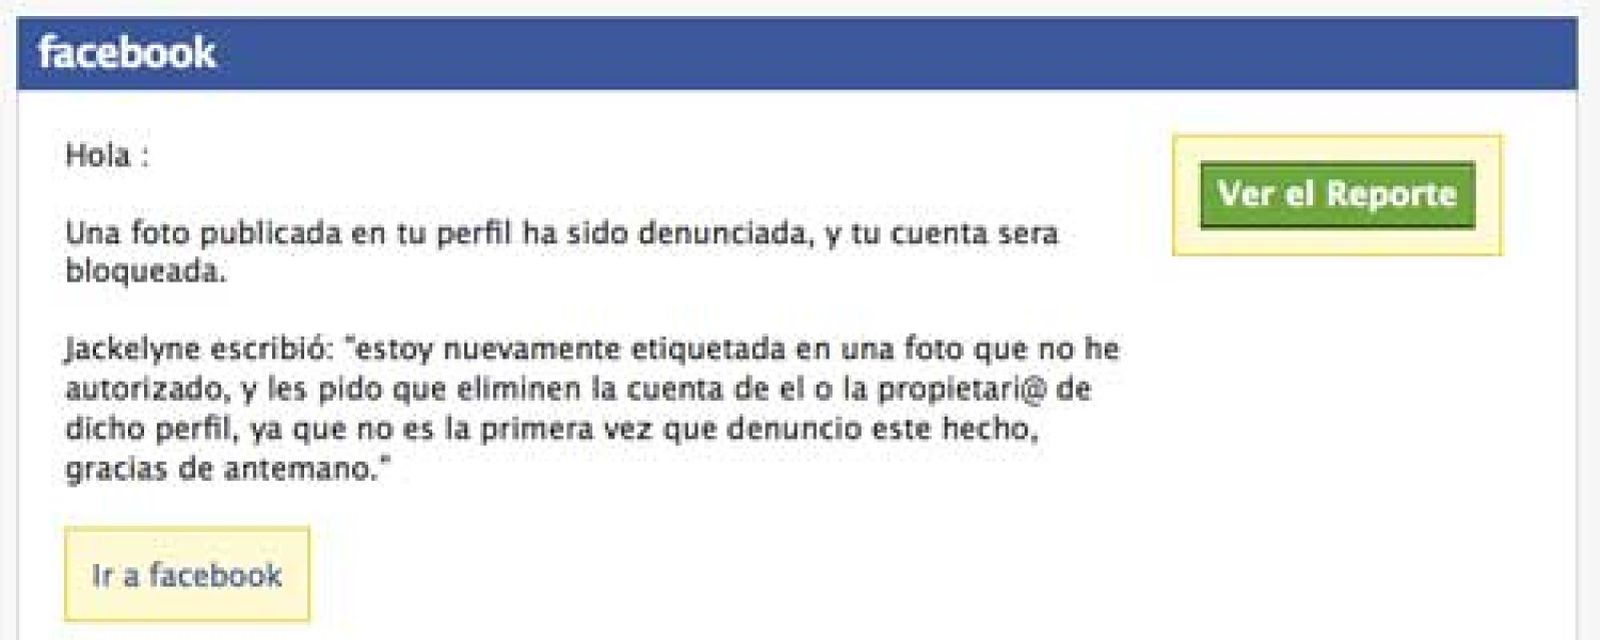 Foto: "Una foto tuya ha sido denunciada y tu cuenta será bloqueada": el malware llega a Facebook